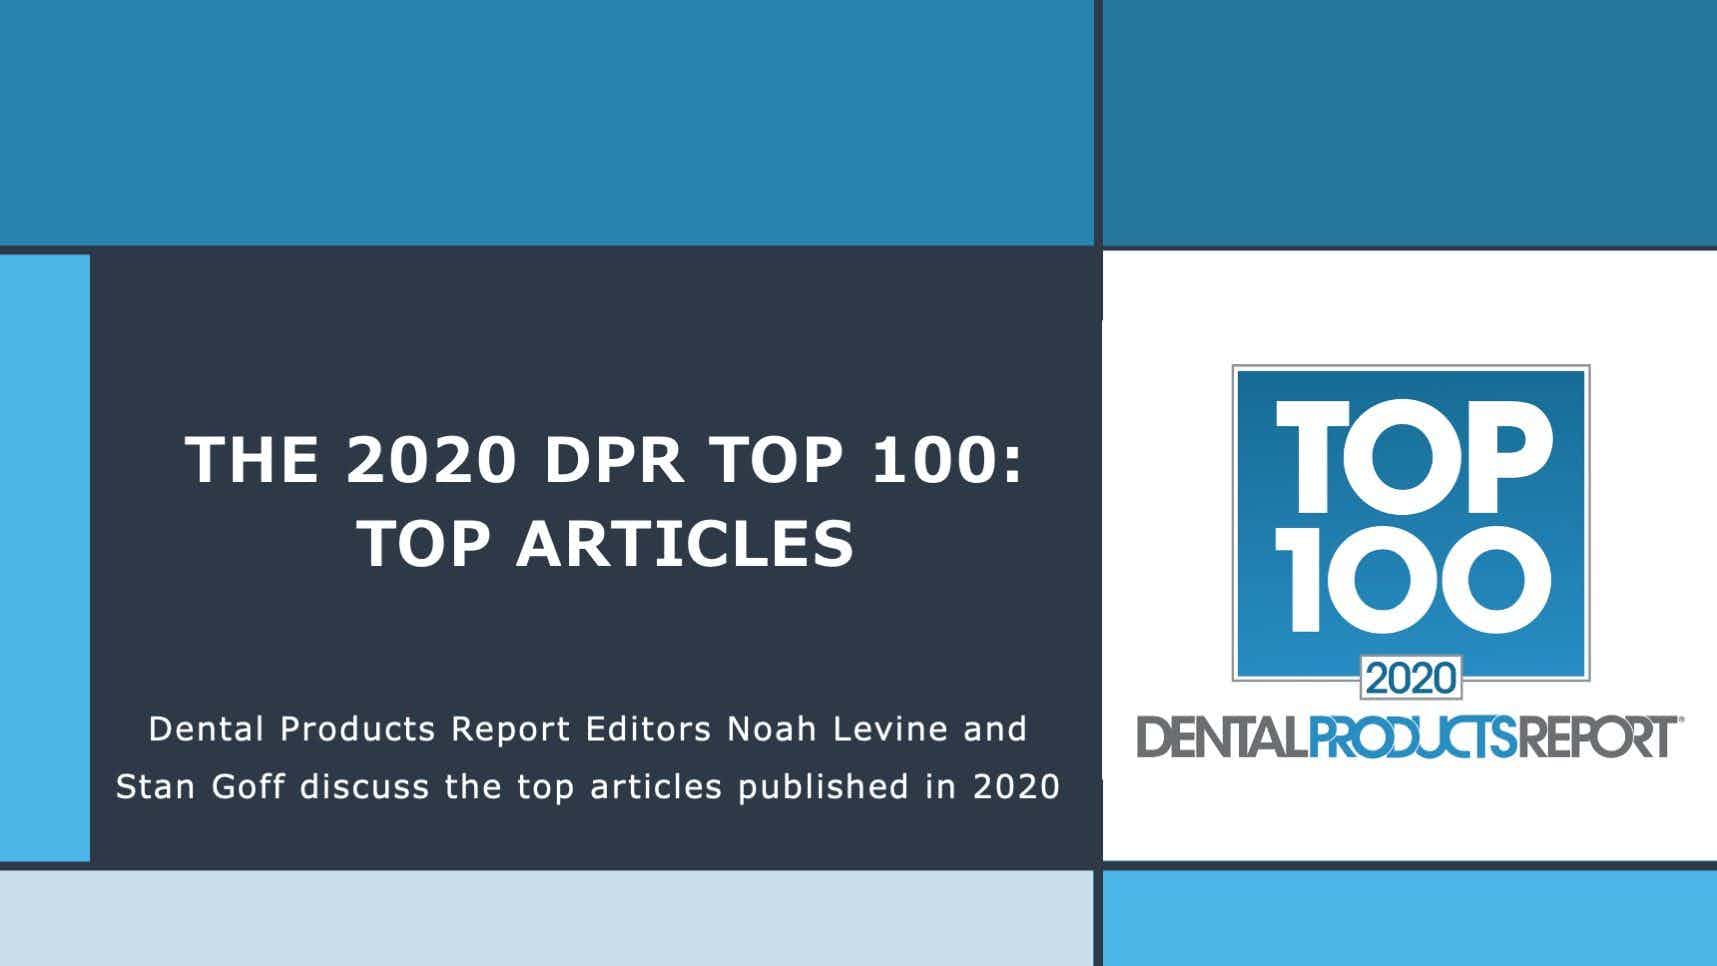 Top Articles 2020